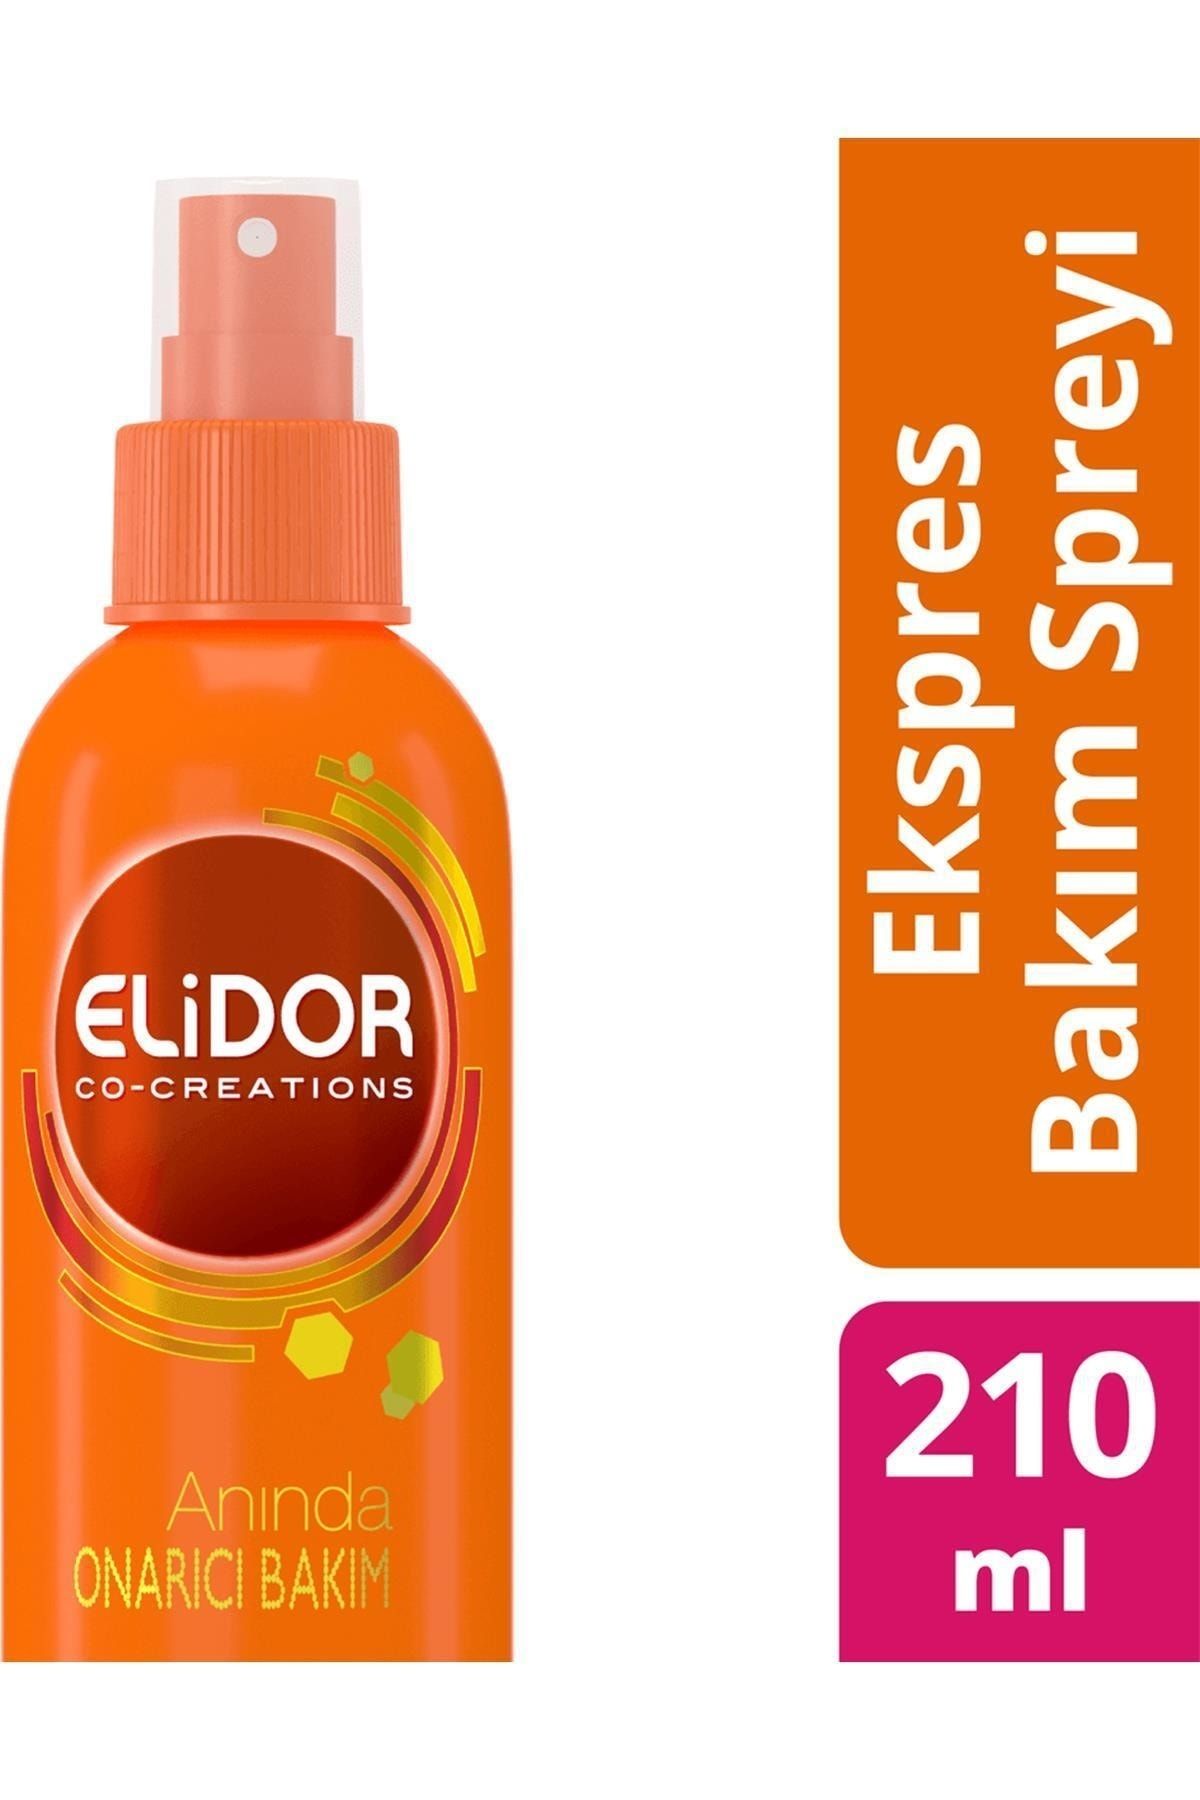 Elidor Marka: Onarıcı Bakım Sıvı Saç Kremi 210 Ml Kategori: Saç Kremi